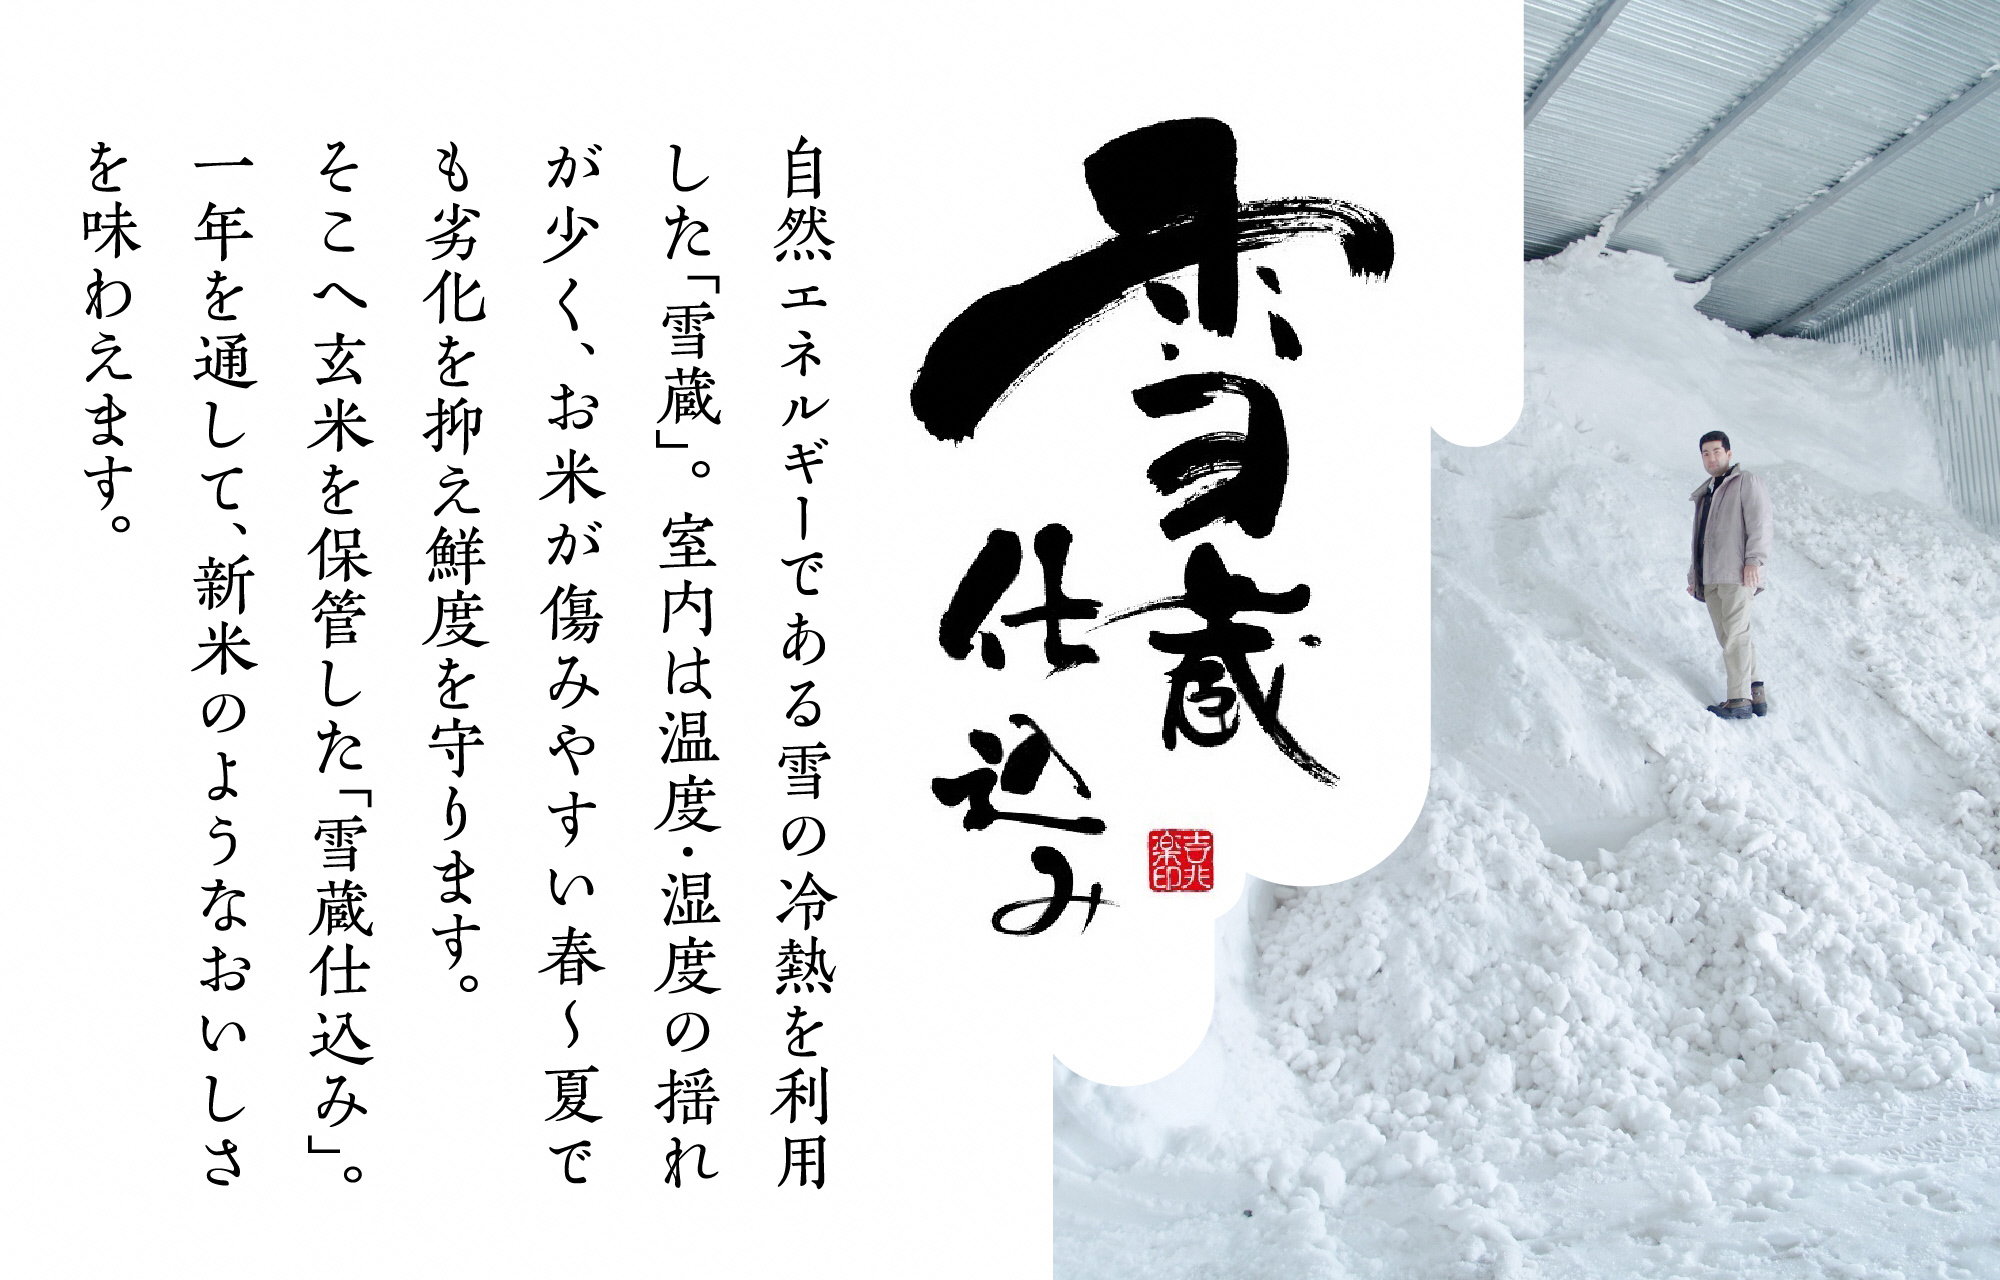 阿賀野産コシヒカリ「雪室米」6kg(雪室氷温熟成) 1J09017